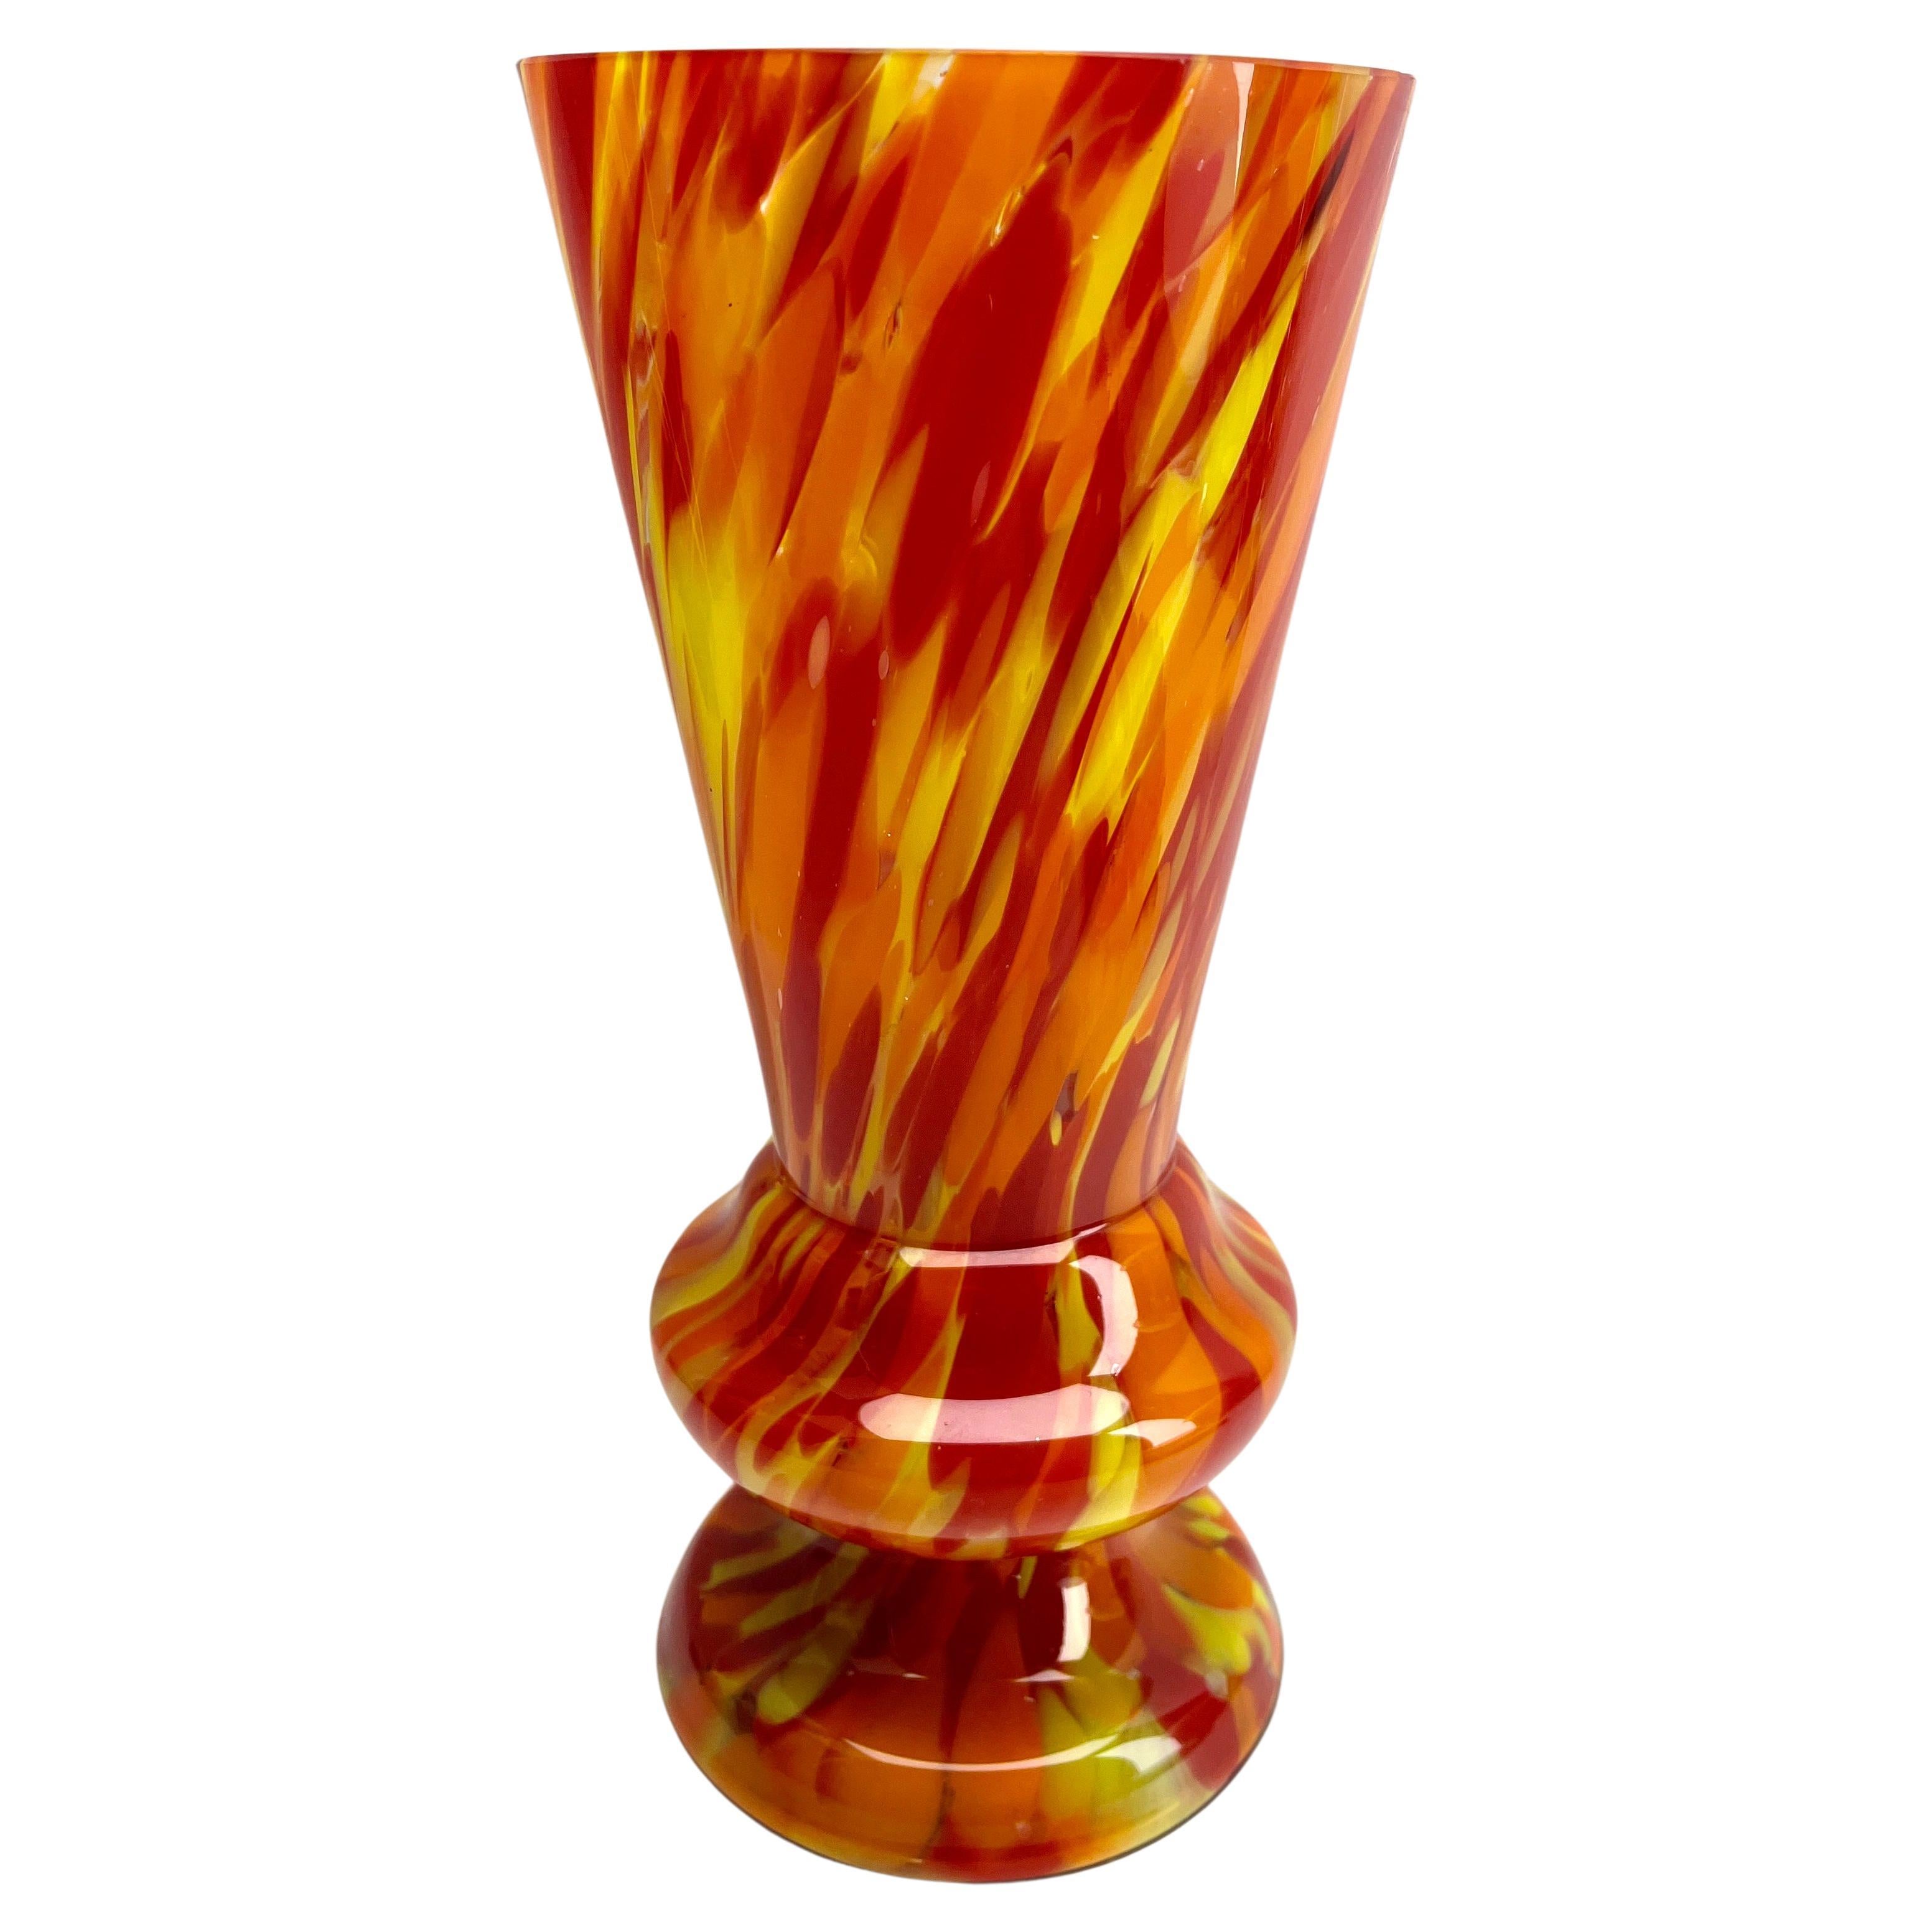 Scailmont - Vaso Art Déco in vetro colorato a più strati

La documentazione può essere trovata nel libro Les Verreries de Scailmont
a l'epoque Art Deco. 

Questi pezzi di vetro prodotti in Belgio durante il periodo Art Decor hanno forme e decori che